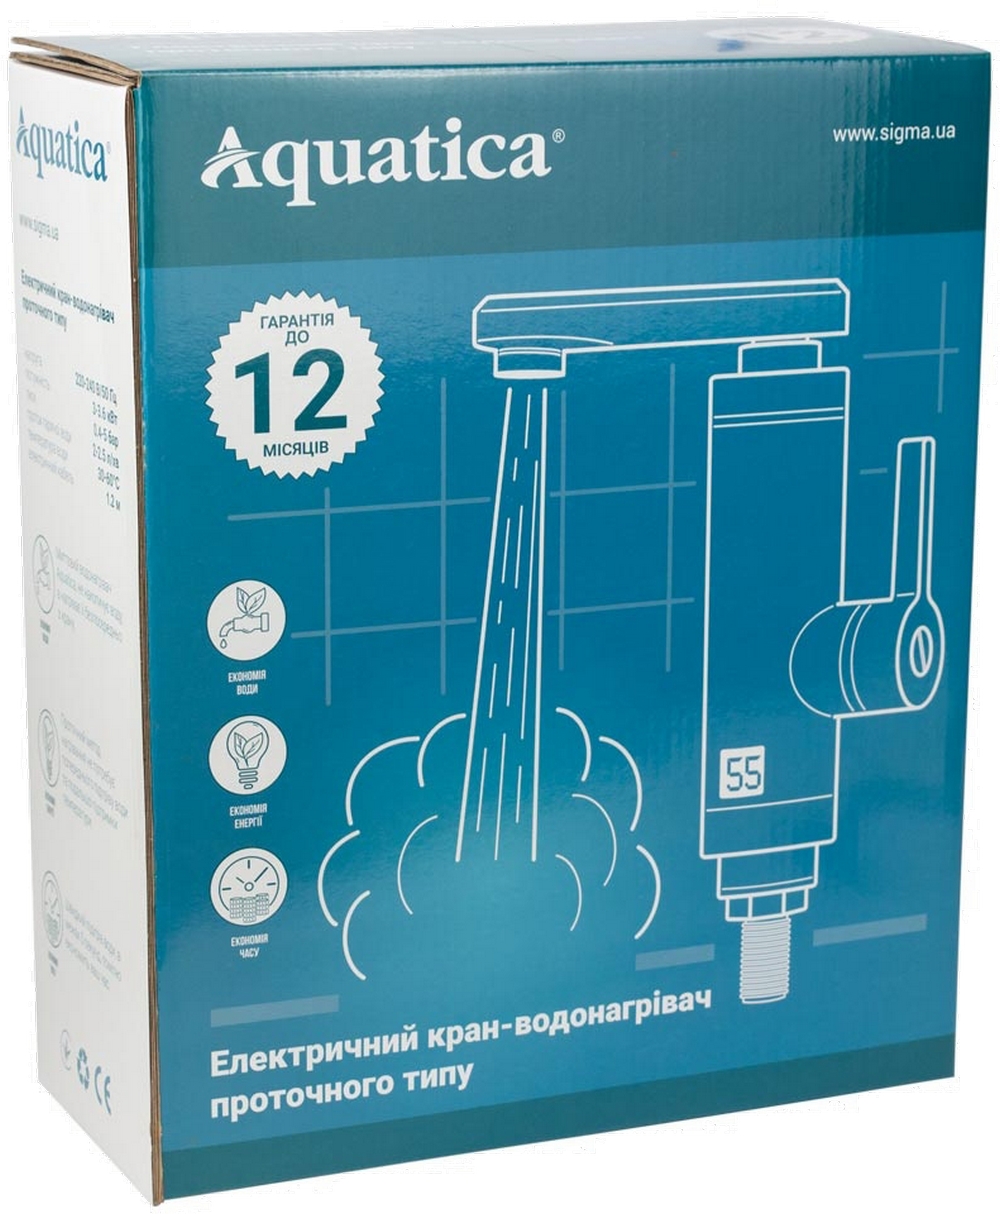 Проточный водонагреватель Aquatica HZ-6B243W цена 1352.00 грн - фотография 2